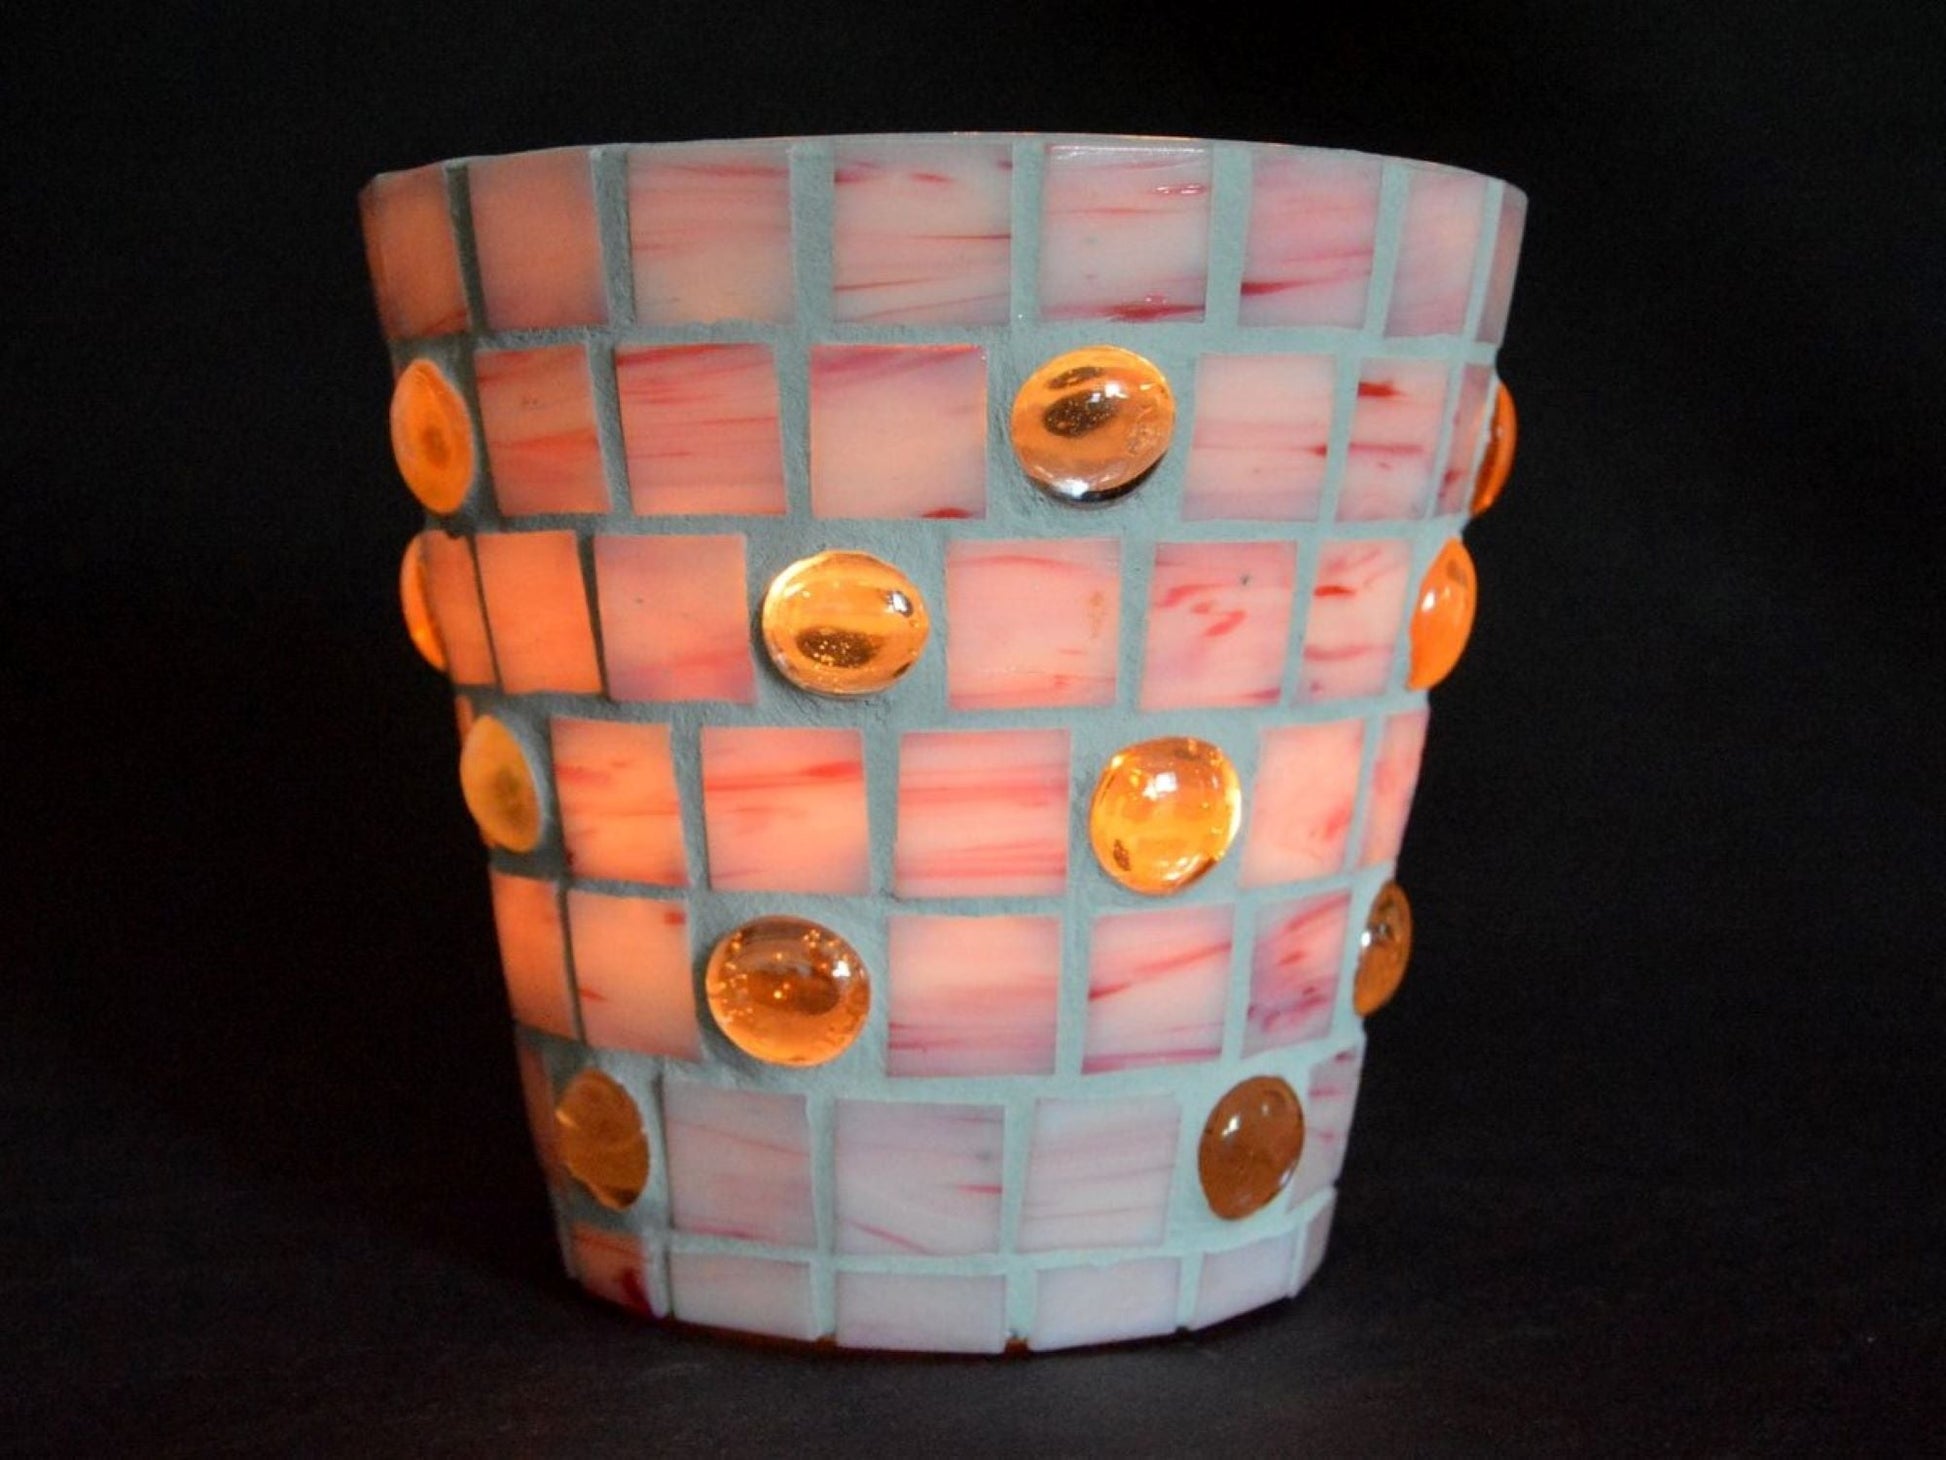 Mosaik Windlicht rosa 14 cm hoch Kerzenhalter Teelichthalter Übertopf Utensilo - Mosaikkasten aus alt mach neu dekoidee